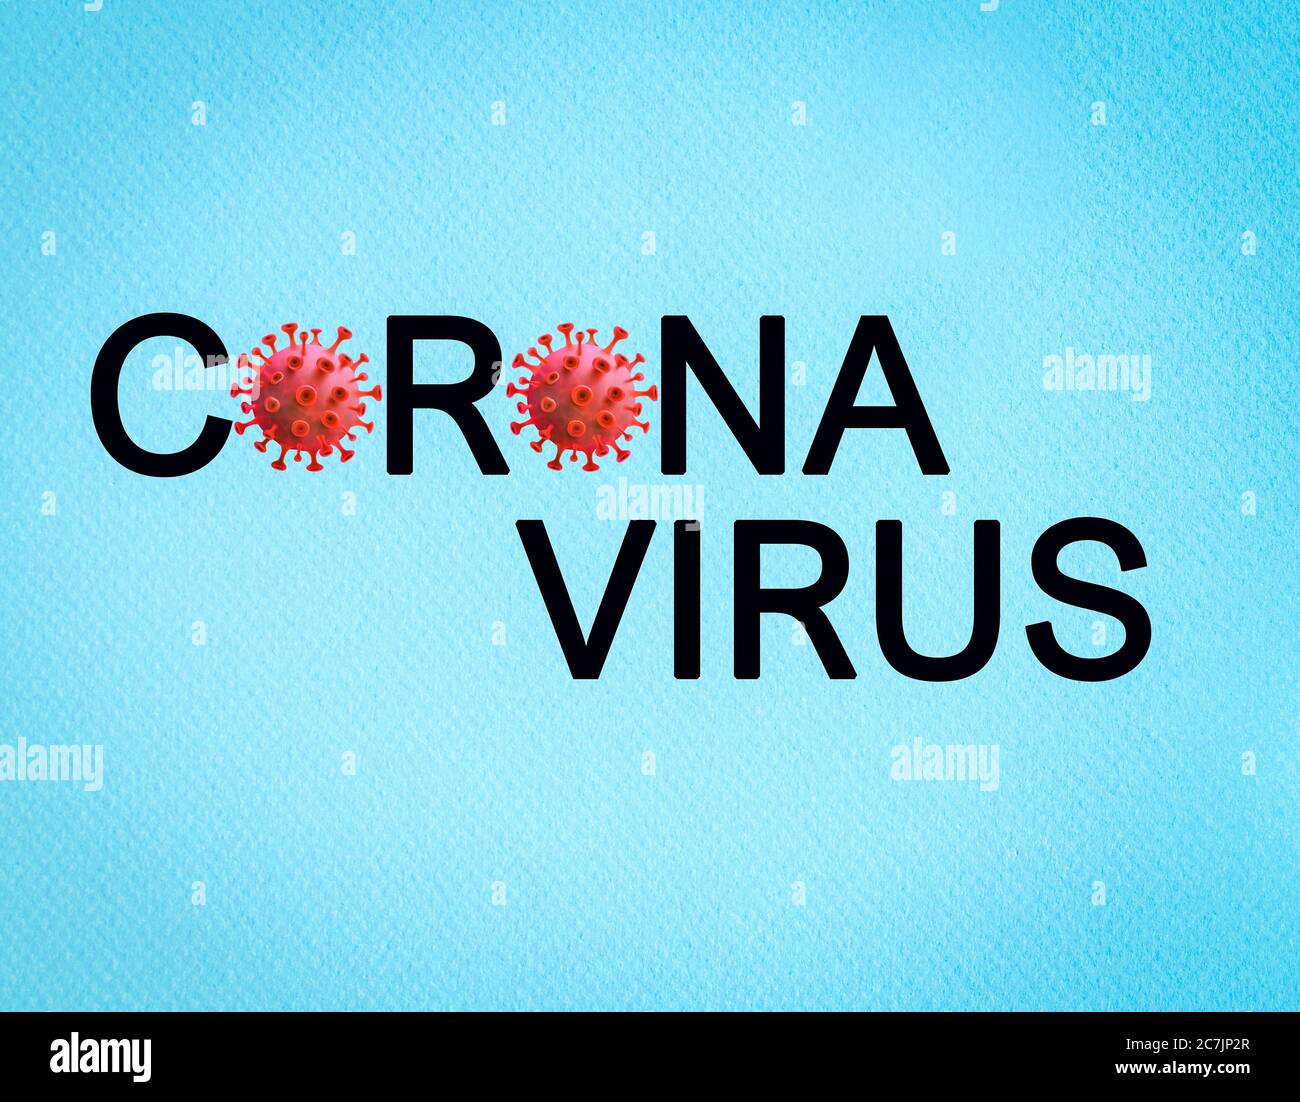 Virus Corona texte sur fond bleu. Covid 19 concept de protection contre la pandémie. Banque D'Images